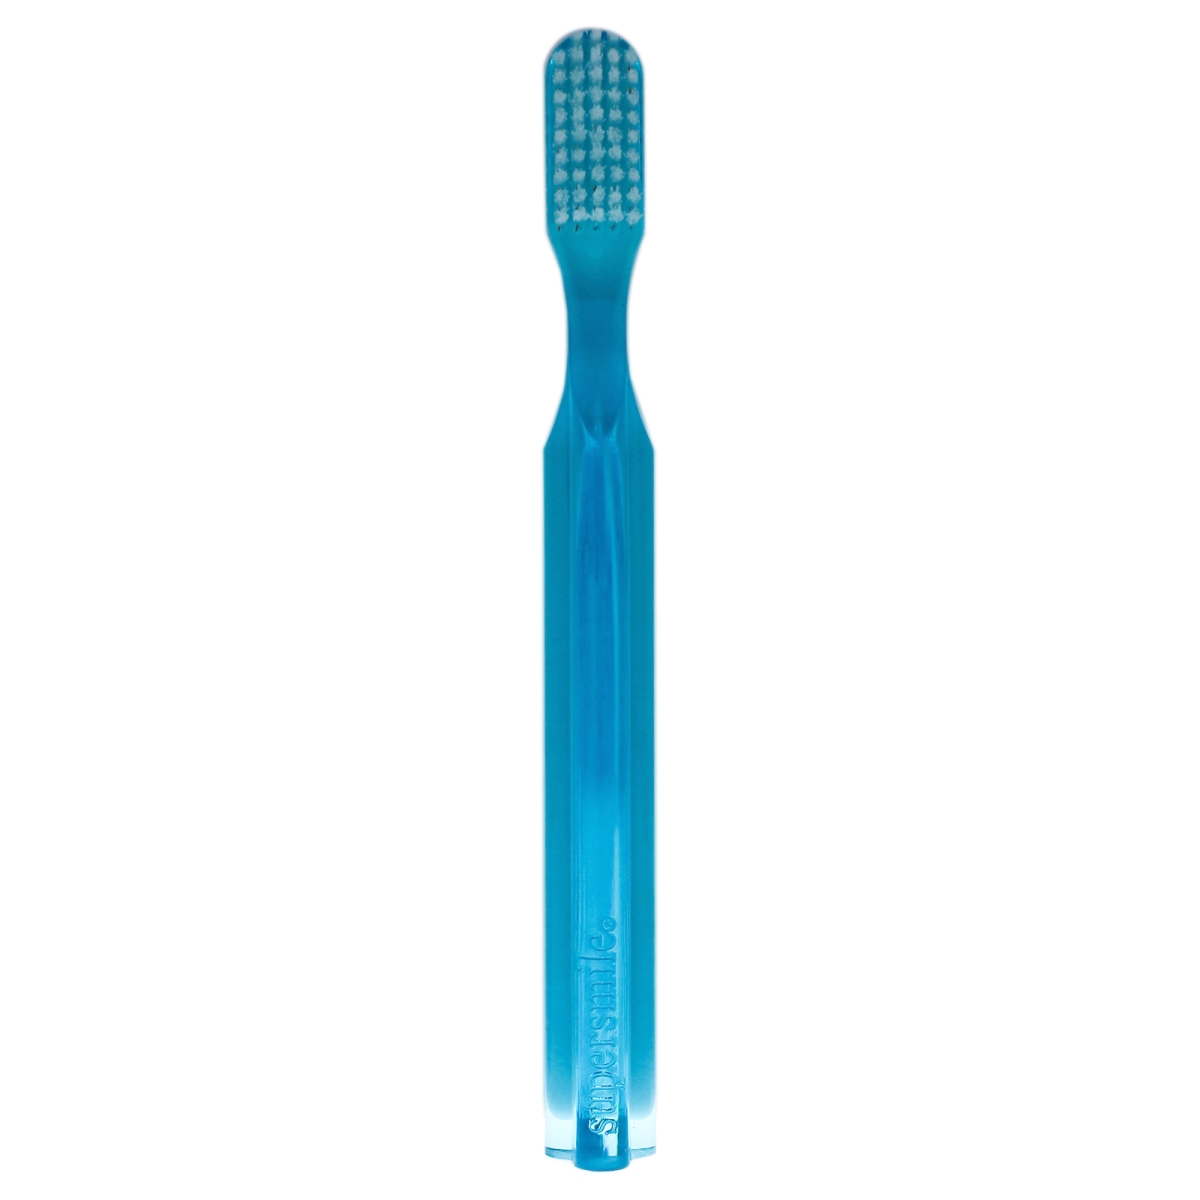 I0085412 Toothbrush For Unisex - Blue